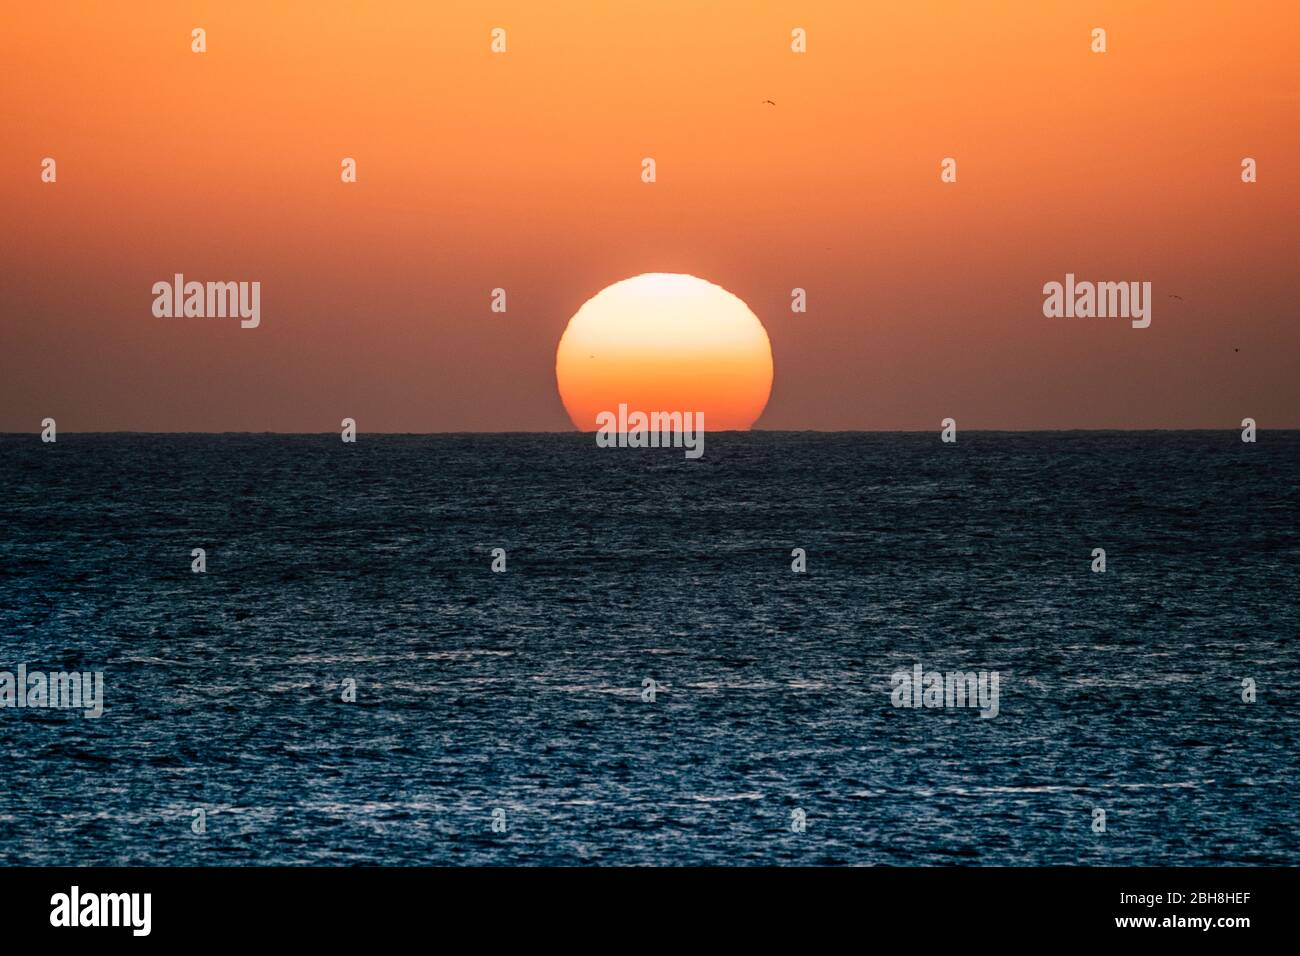 Sonnenuntergang oder Sonnenaufgang Moment über dem Meer mit Sonne, die die Horizontlinie auf dem Wasser berührt - romantisches und touristisches Konzept für Reiseurlaub Hintergrund gefärbt Stockfoto